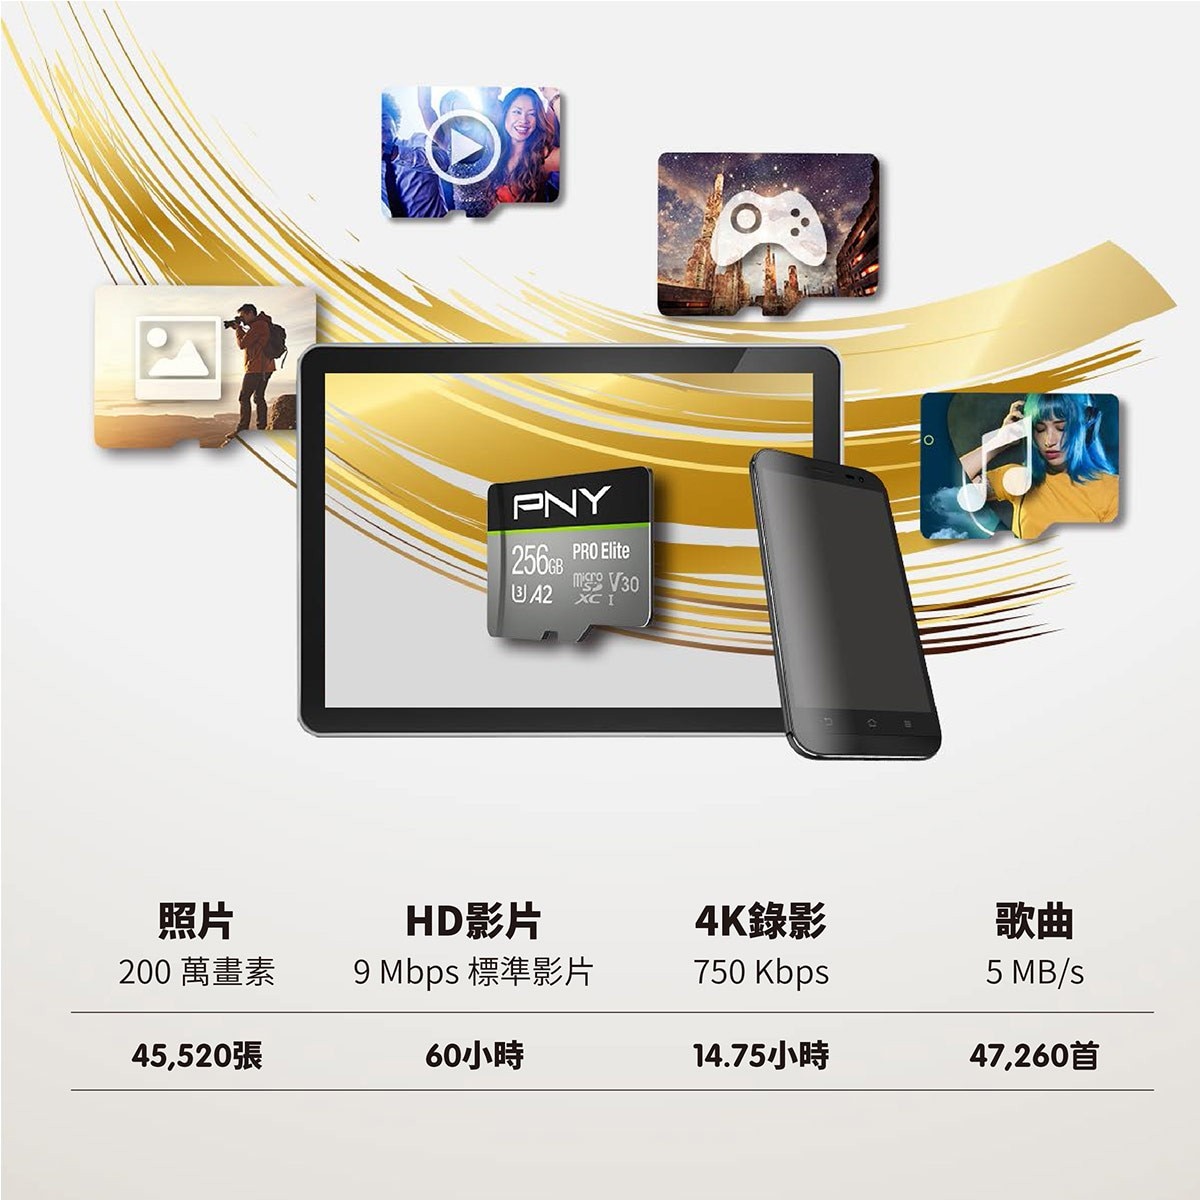 PNY 256GB記憶卡，照片200萬畫素可容納45520張，HD影片9Mbps標準影片可容納60小時，4K錄影750Kbps可容納14.75小時，歌曲5MB/S可容納47260首歌。